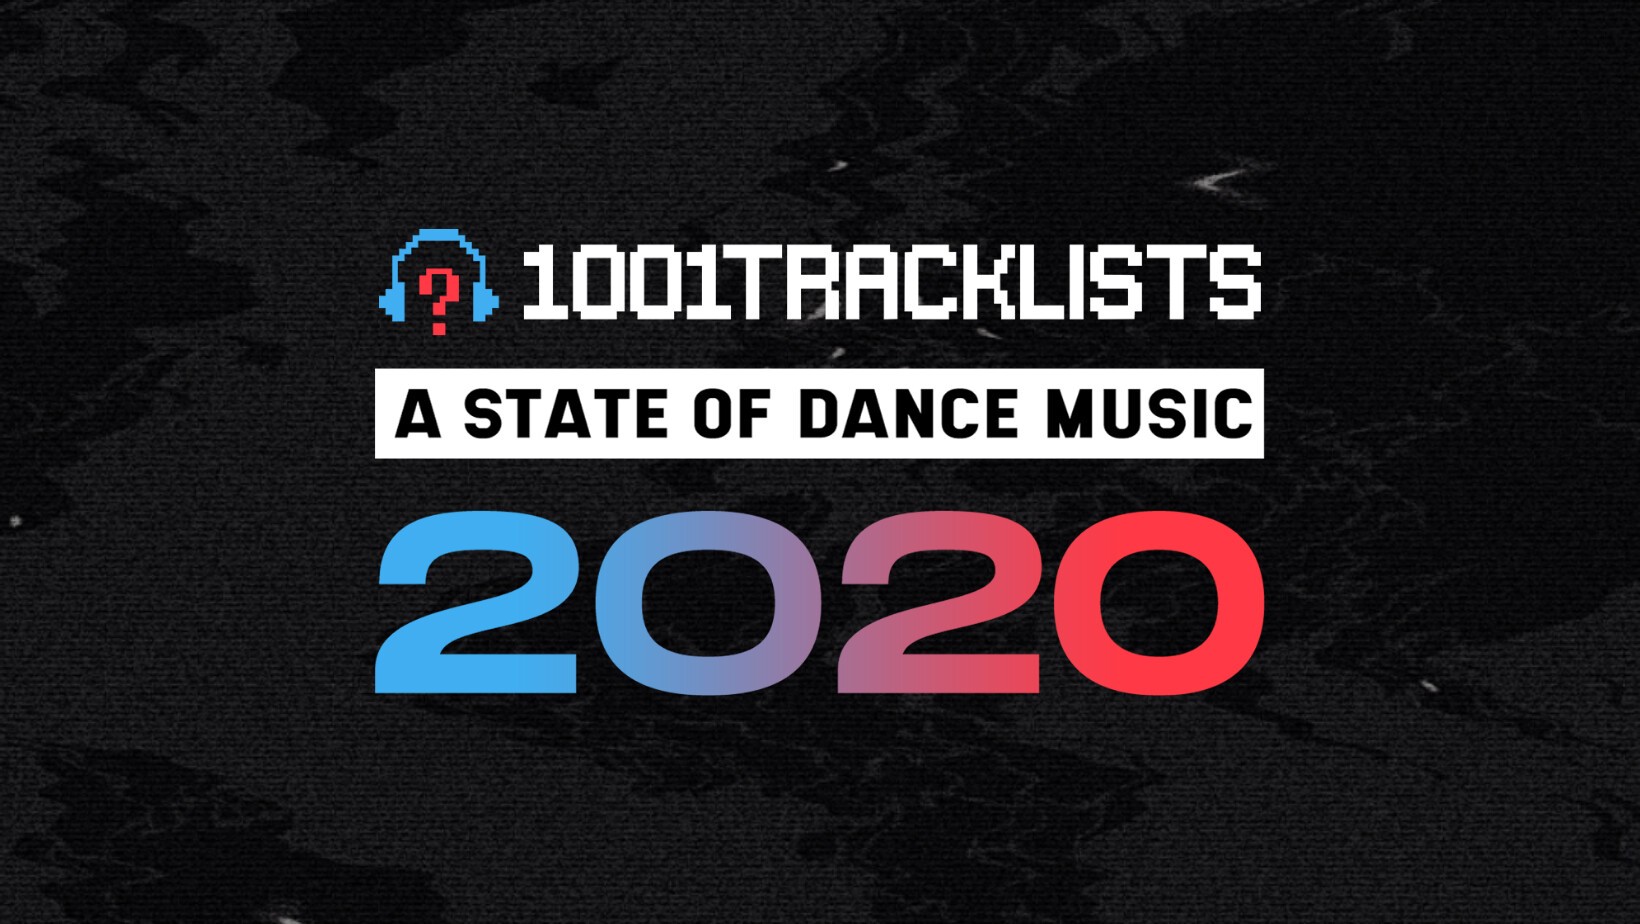 【1001Tracklists】2020年度のトップ・トラック、レーベル、トラックリストなどを集計したランキング “A STATE OF DANCE MUSIC 2020” 発表！